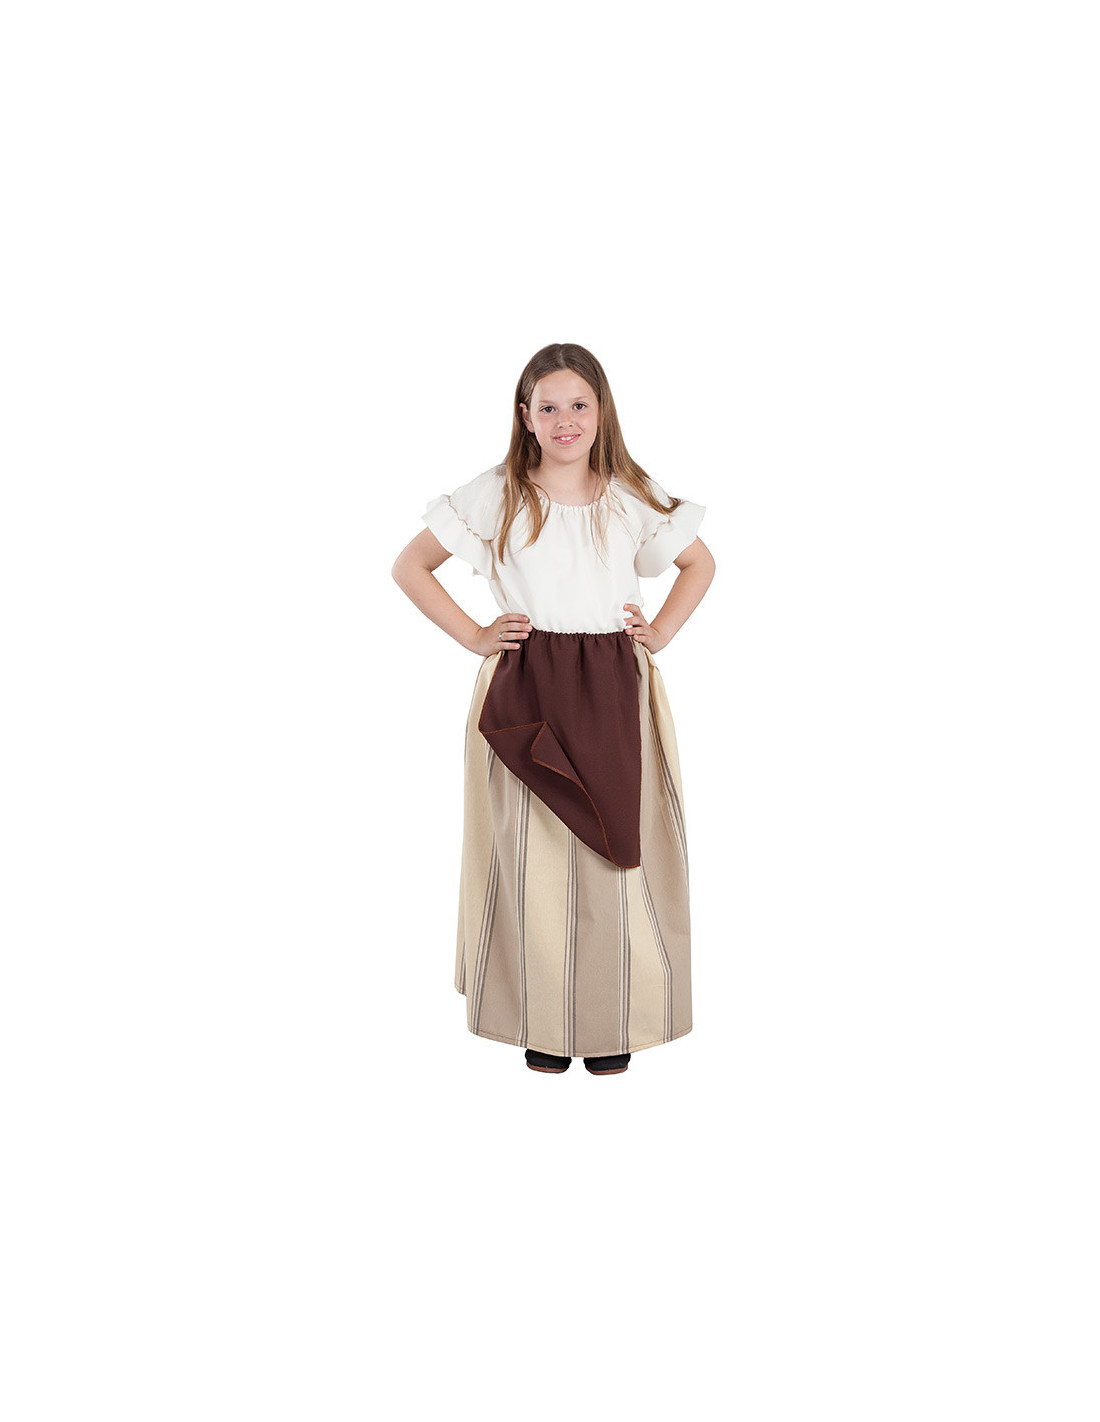 Falda campesina medieval infantil - Comprar en Tienda Disfraces Bacanal